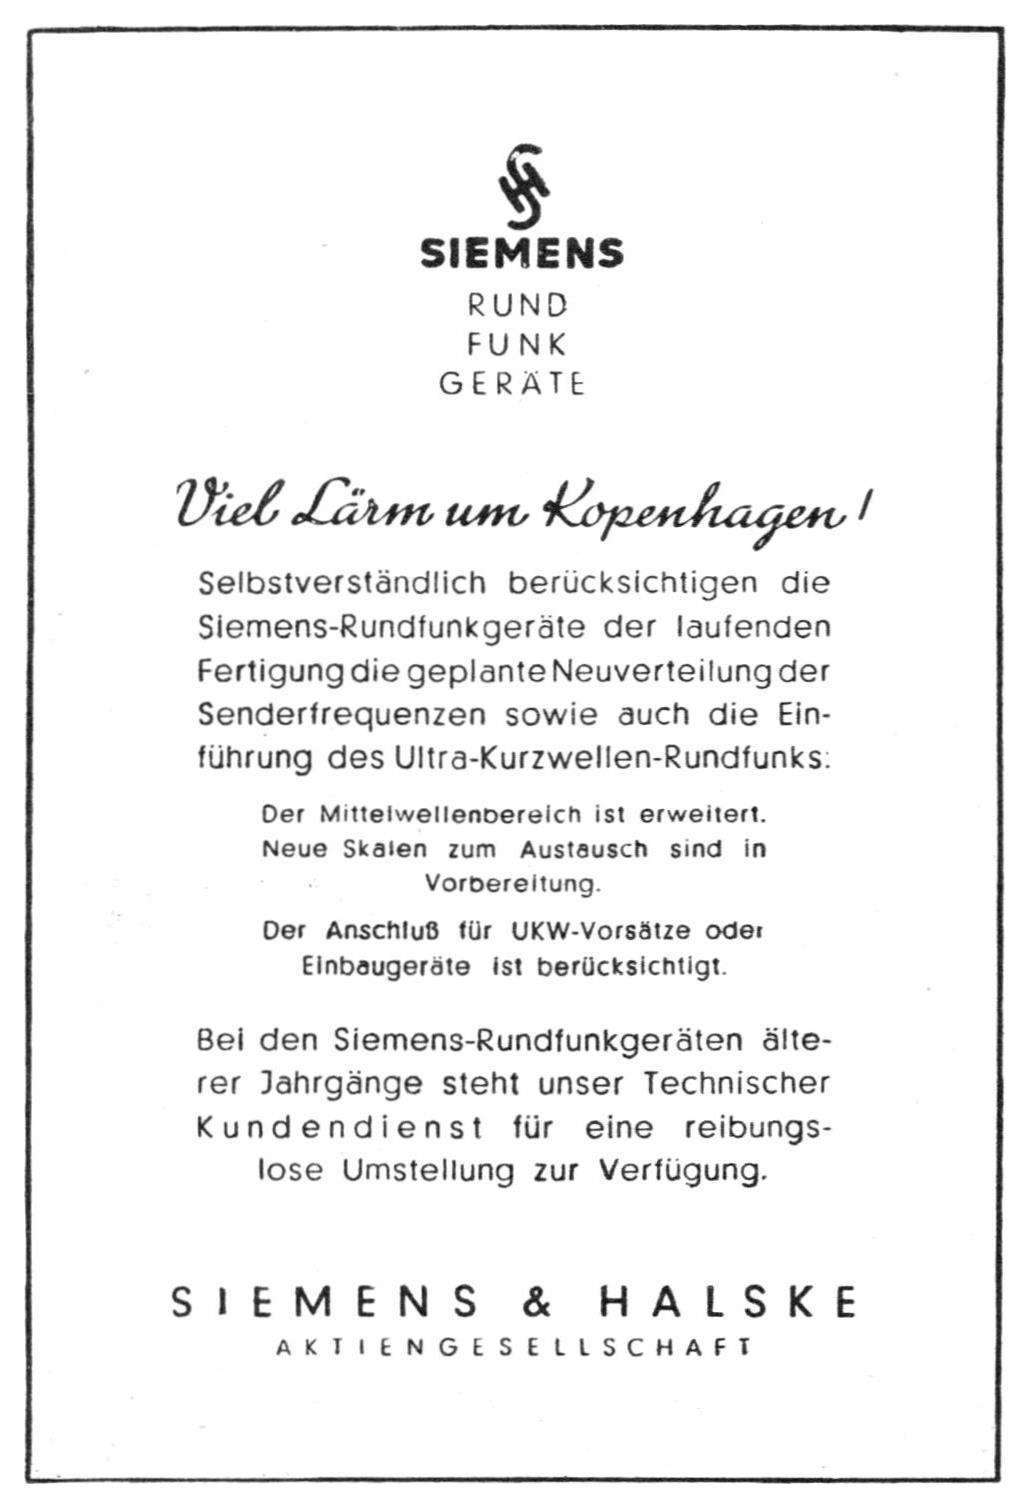 Siemens 1949 0.jpg